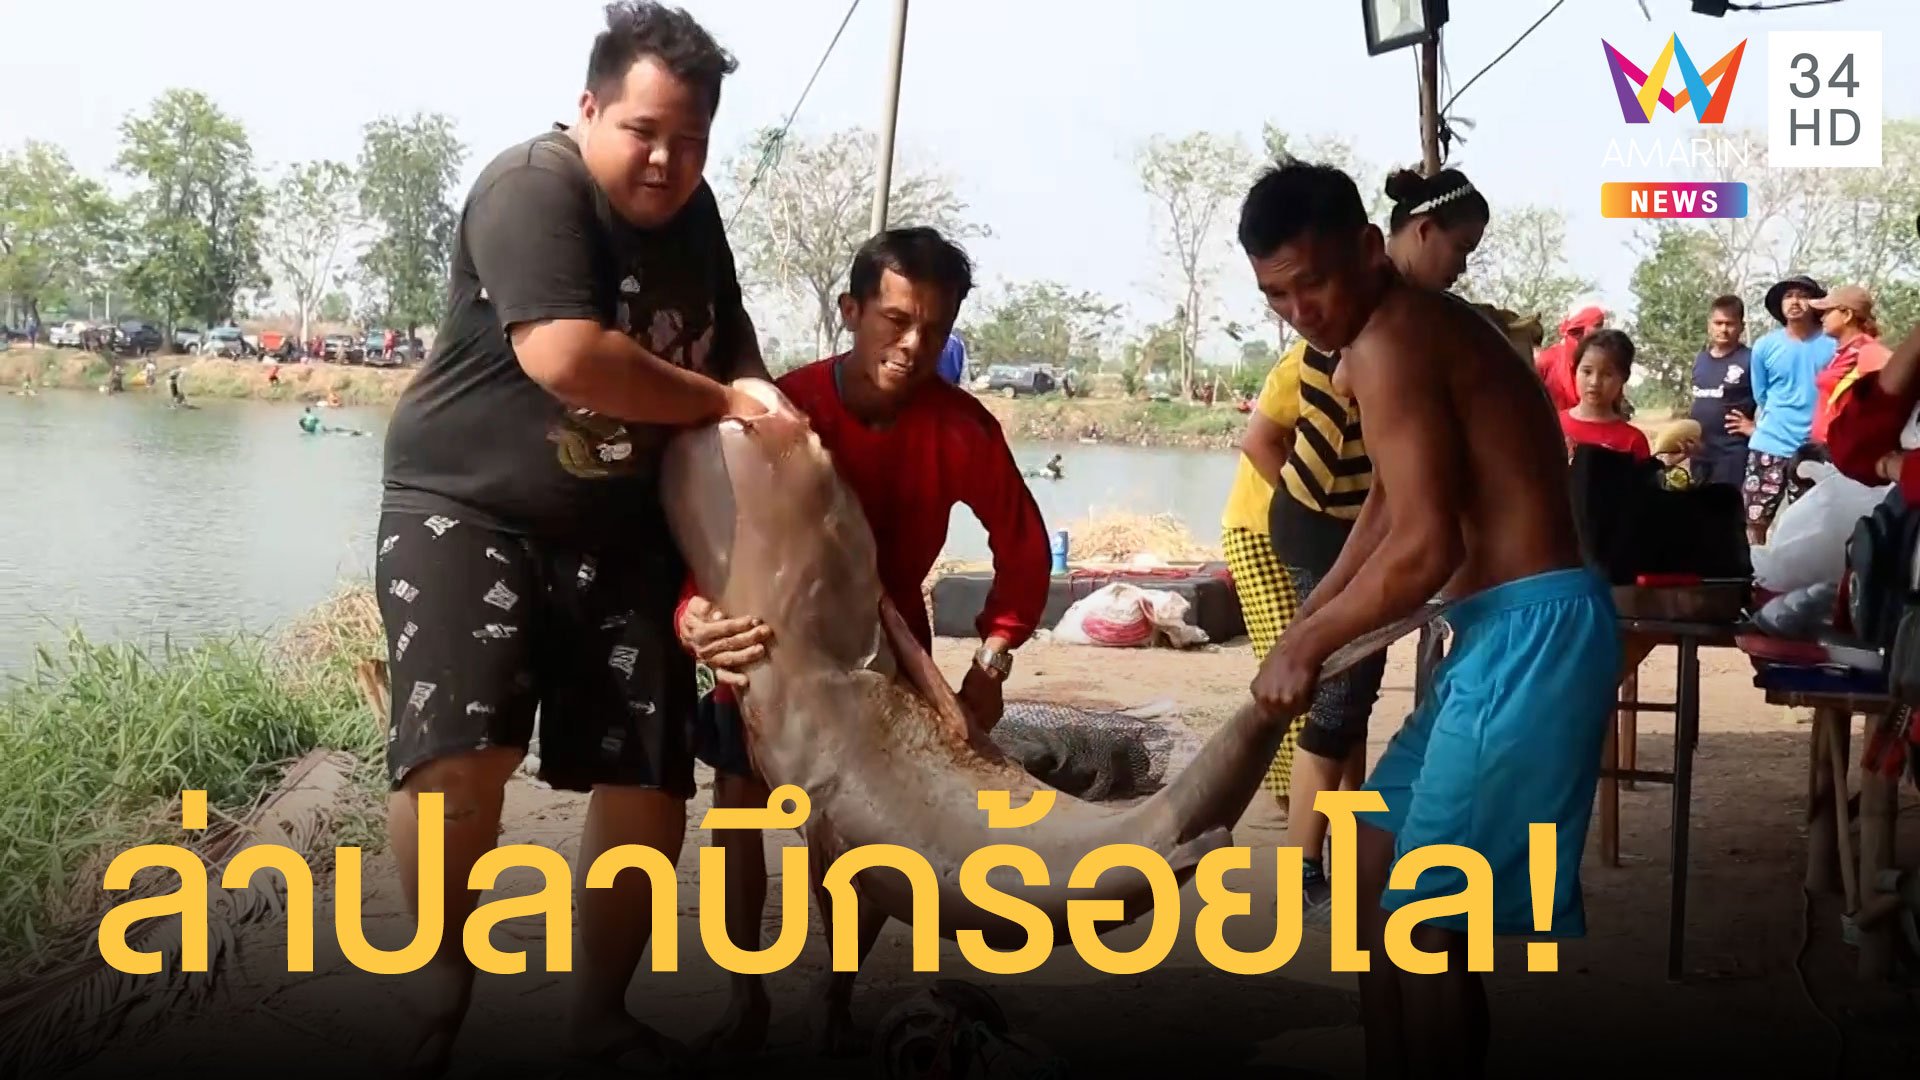 เซียนปลาทั่วไทยเป็นพันล่าปลาบึกร้อยกิโล | ข่าวอรุณอมรินทร์ | 22 มี.ค. 64 | AMARIN TVHD34